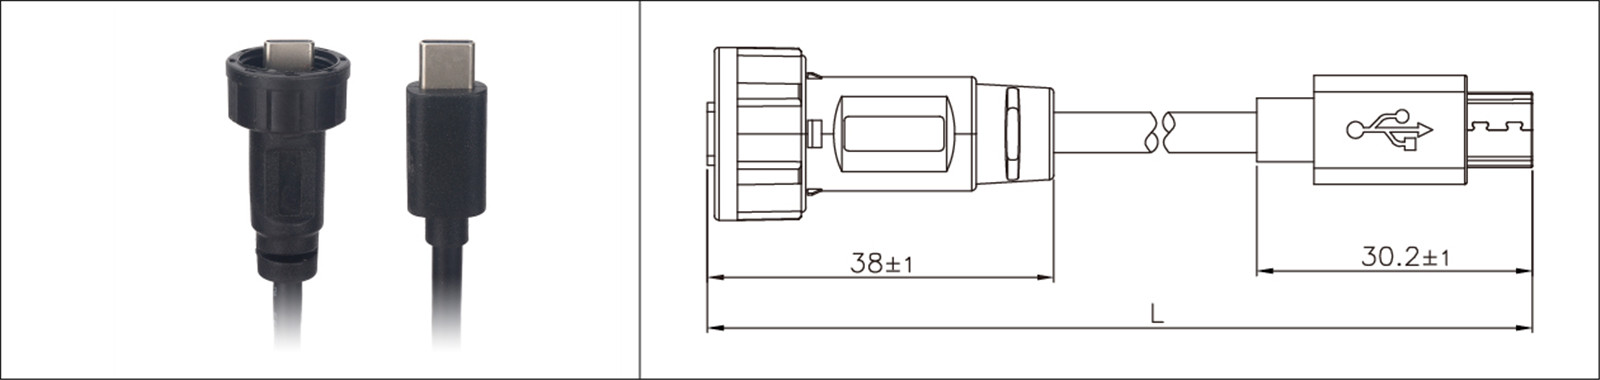 Βάση πάνελ Micro USB τύπου 2.0 3.0 θηλυκό και αρσενικό αδιάβροχο IP67 overmold καλώδιο επέκτασης βιομηχανική σύνδεση-02 (14)